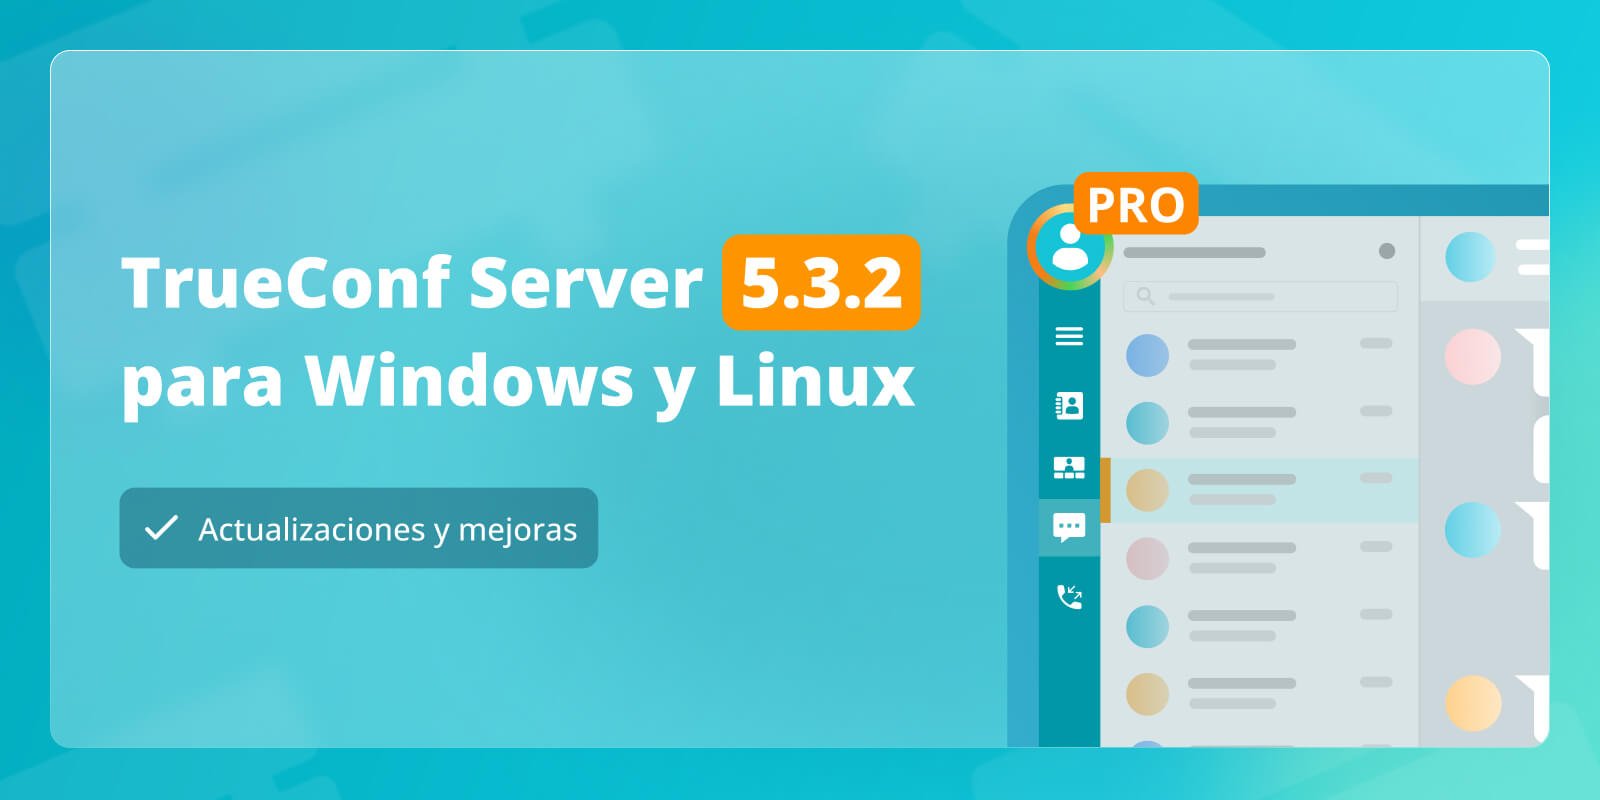 TrueConf Server 5.3.2: Actualizaciones y mejoras 6